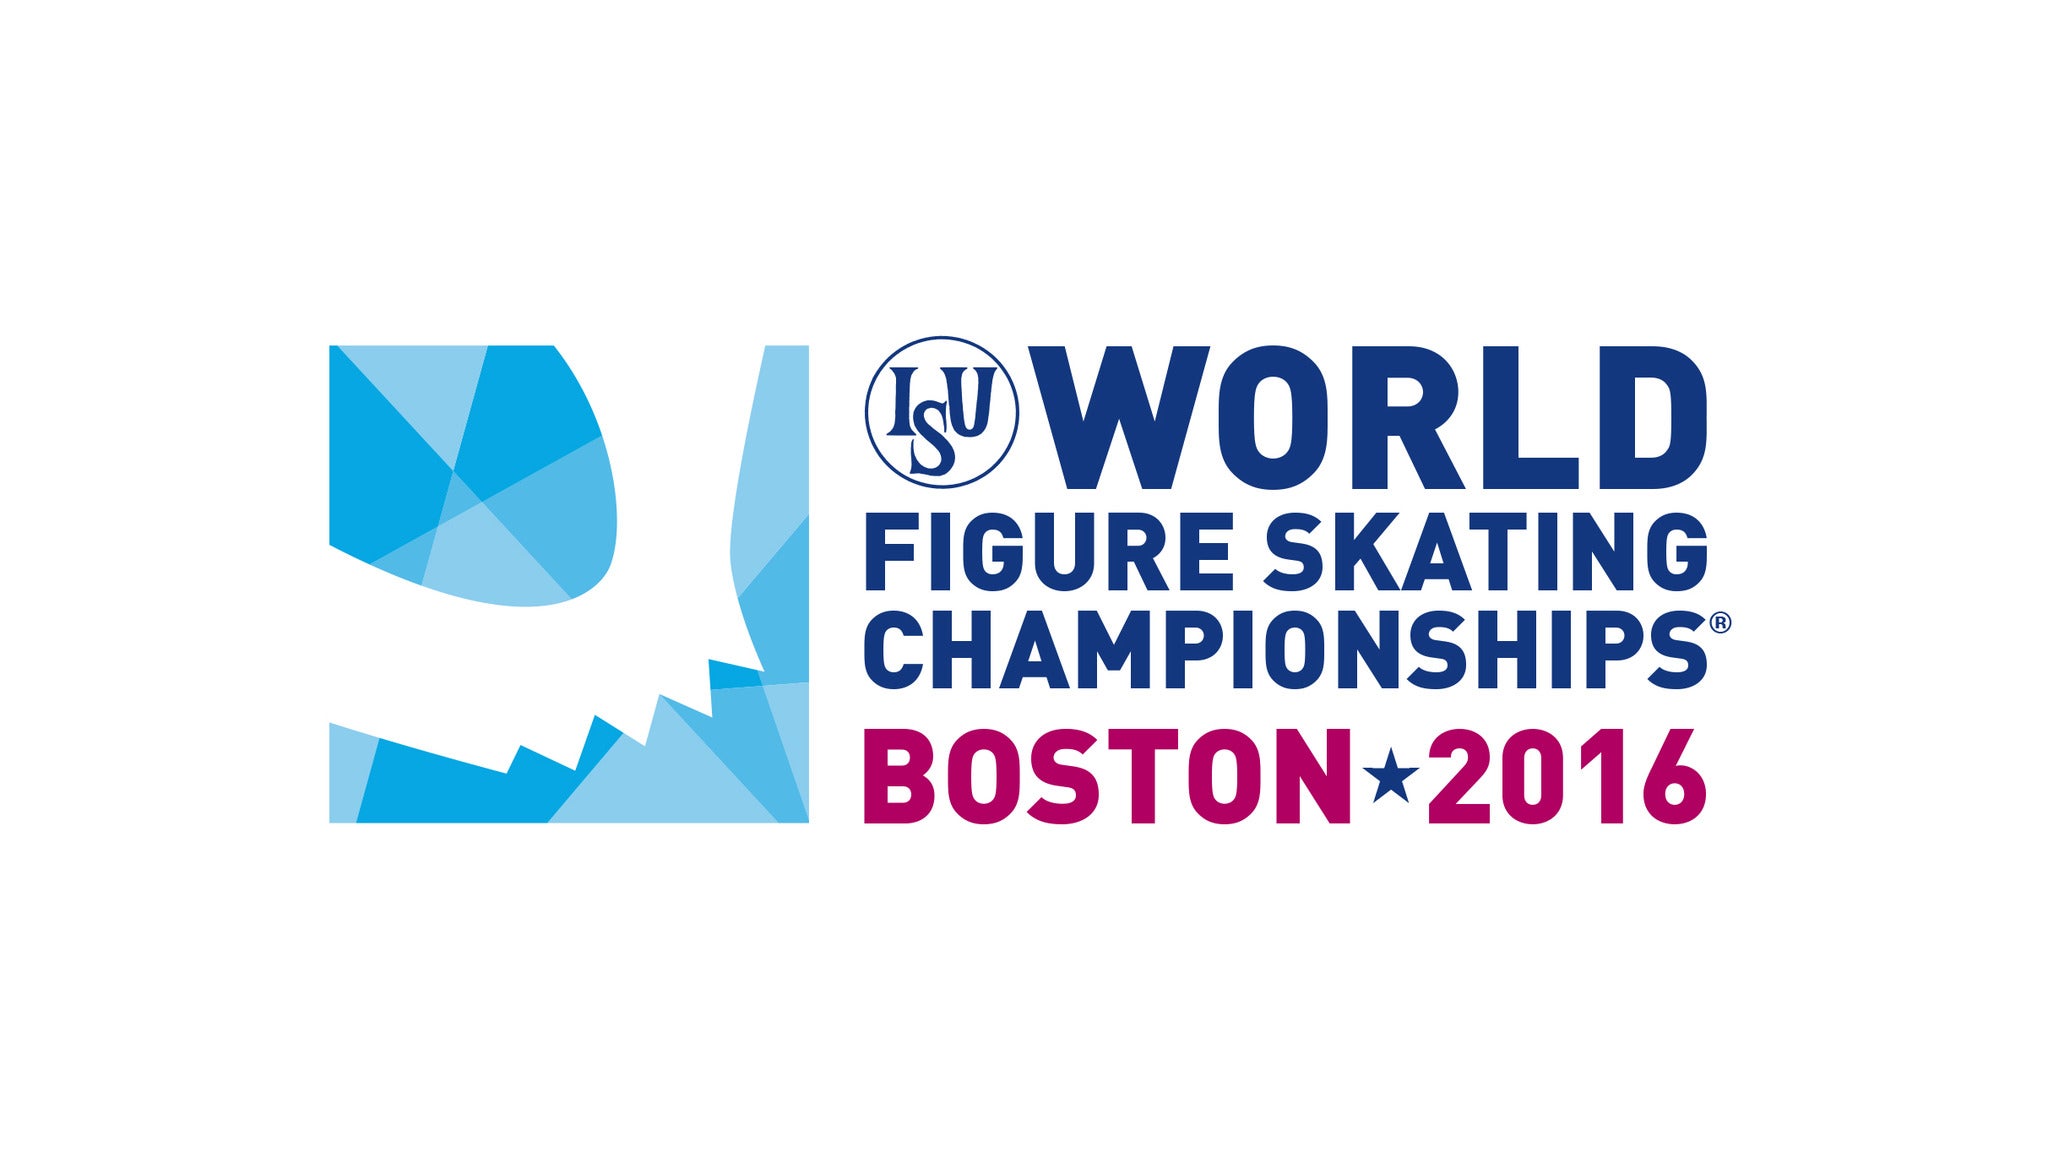 worlds-isu-figure-skating-championship-tickets-single-game-tickets-schedule-ticketmaster